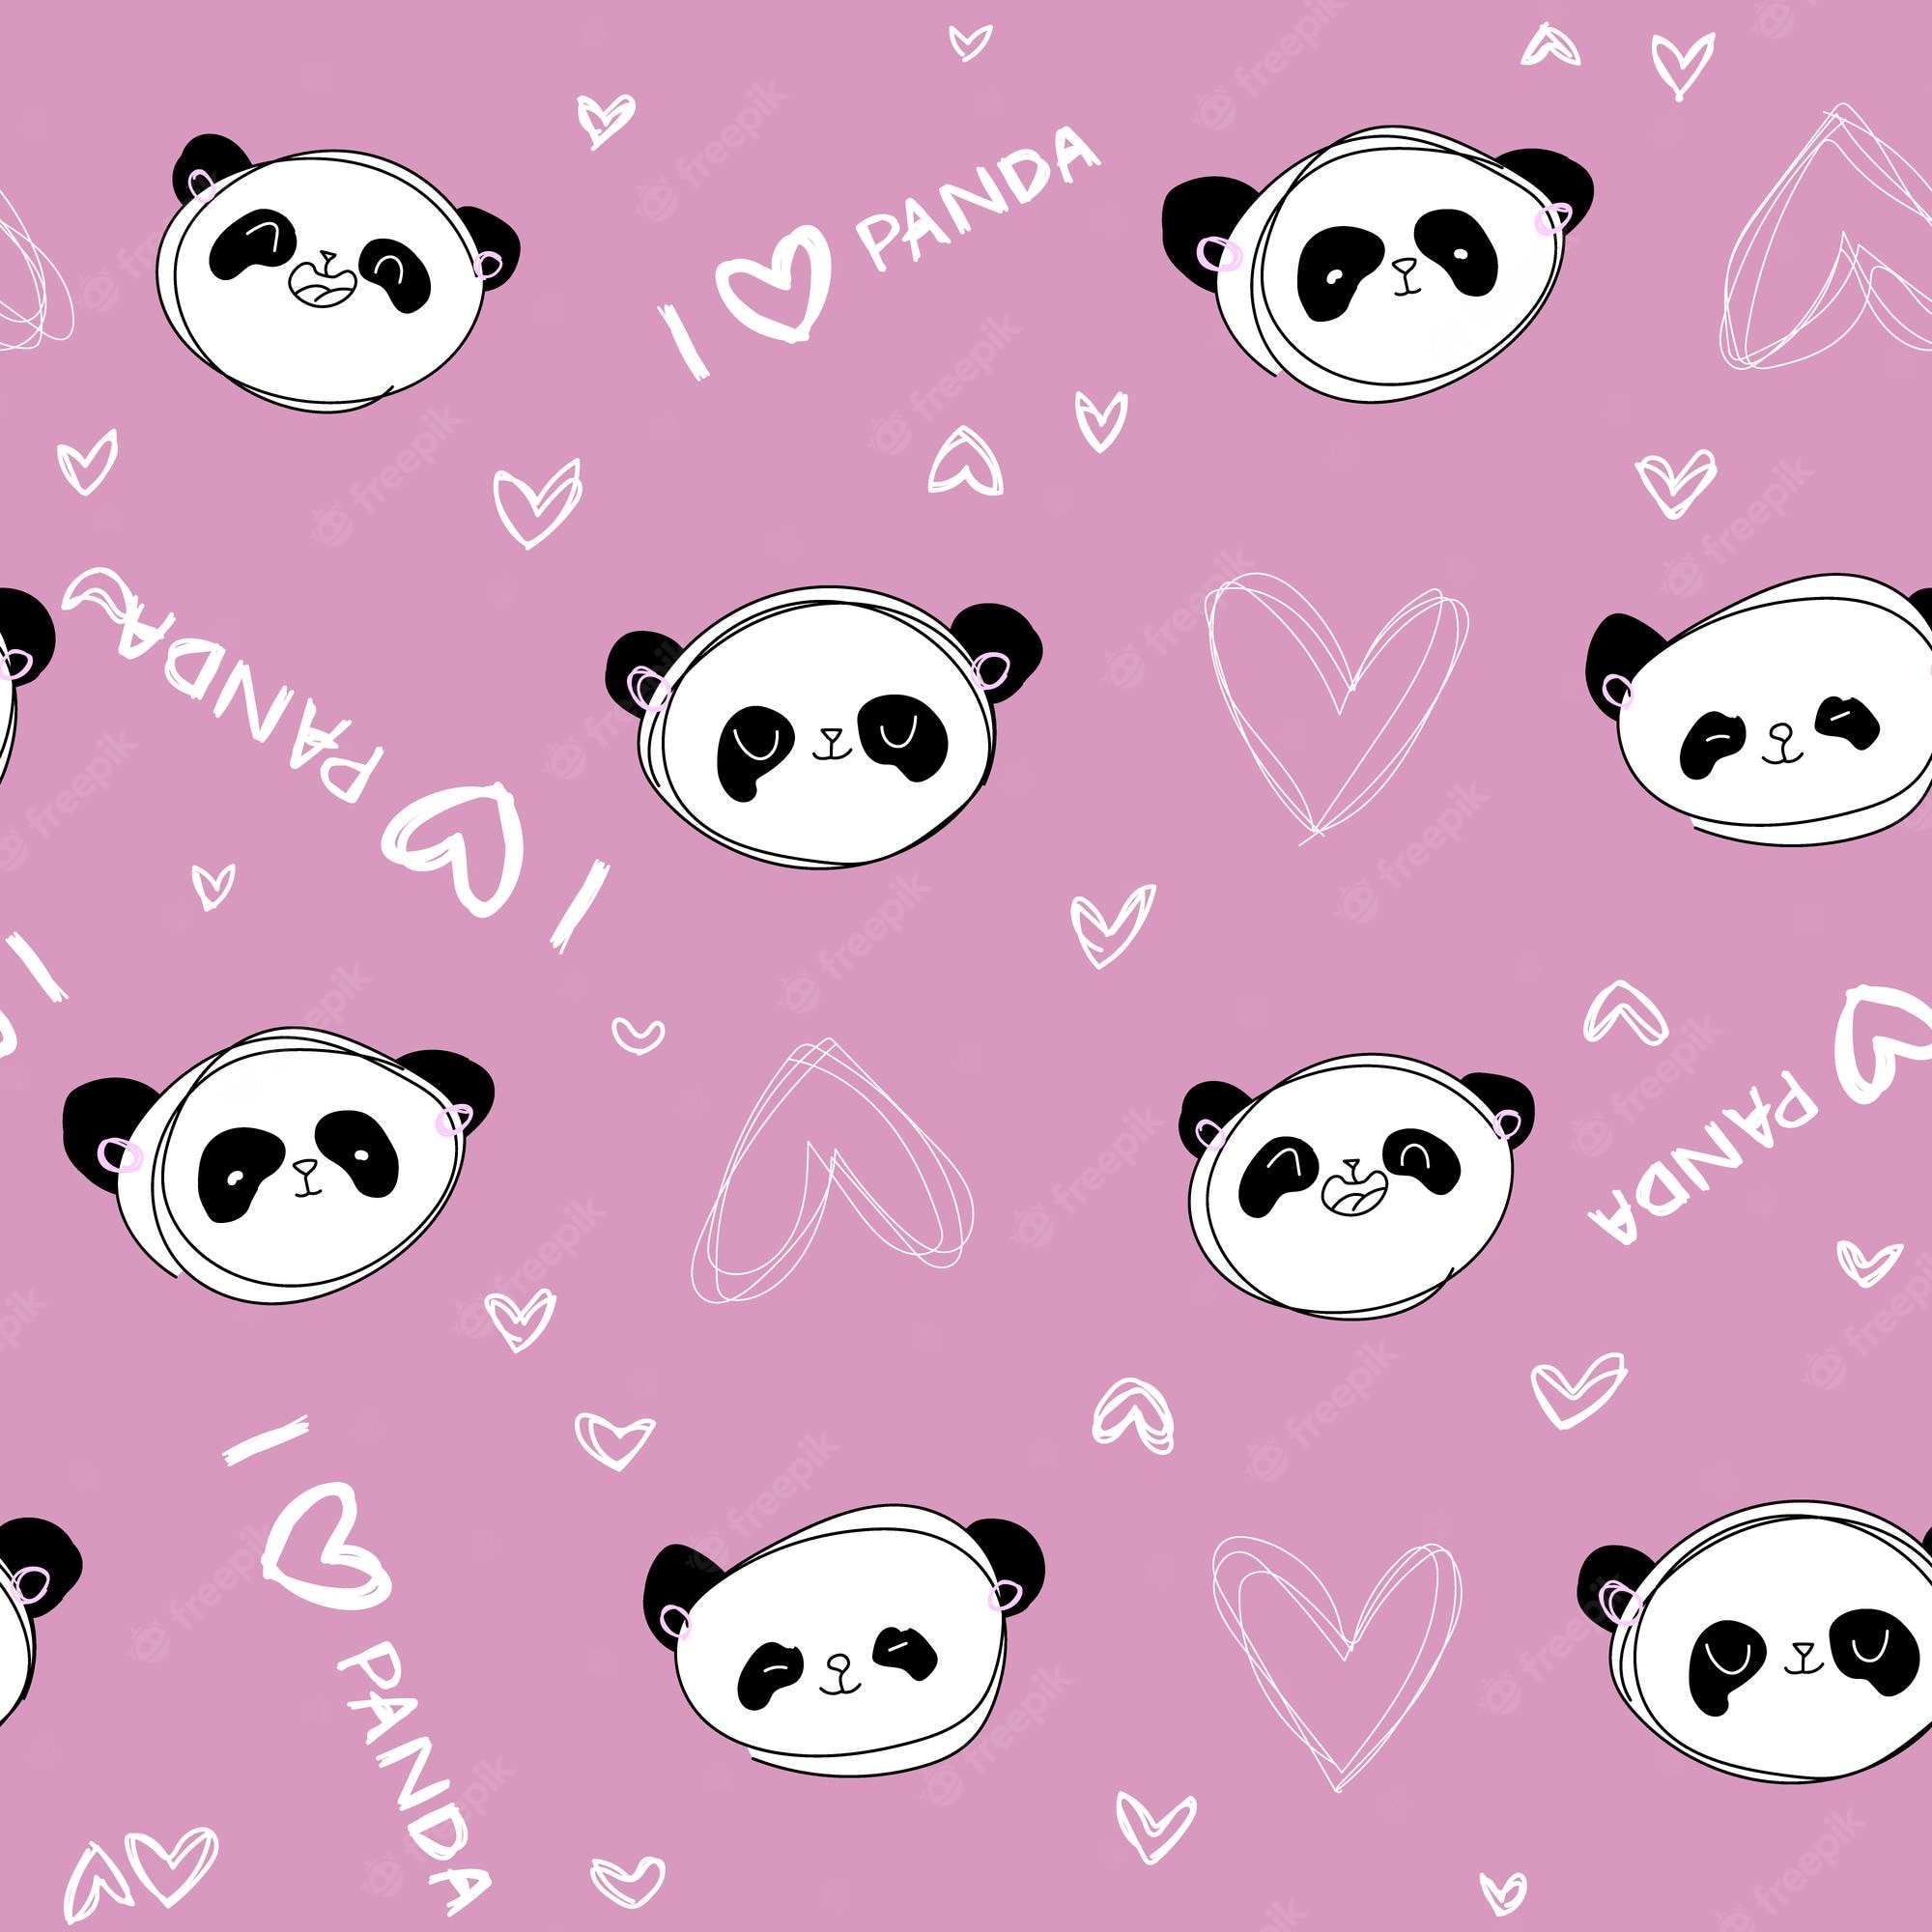 Pink Panda Wallpaper Image Vectors Stock Photos Psd